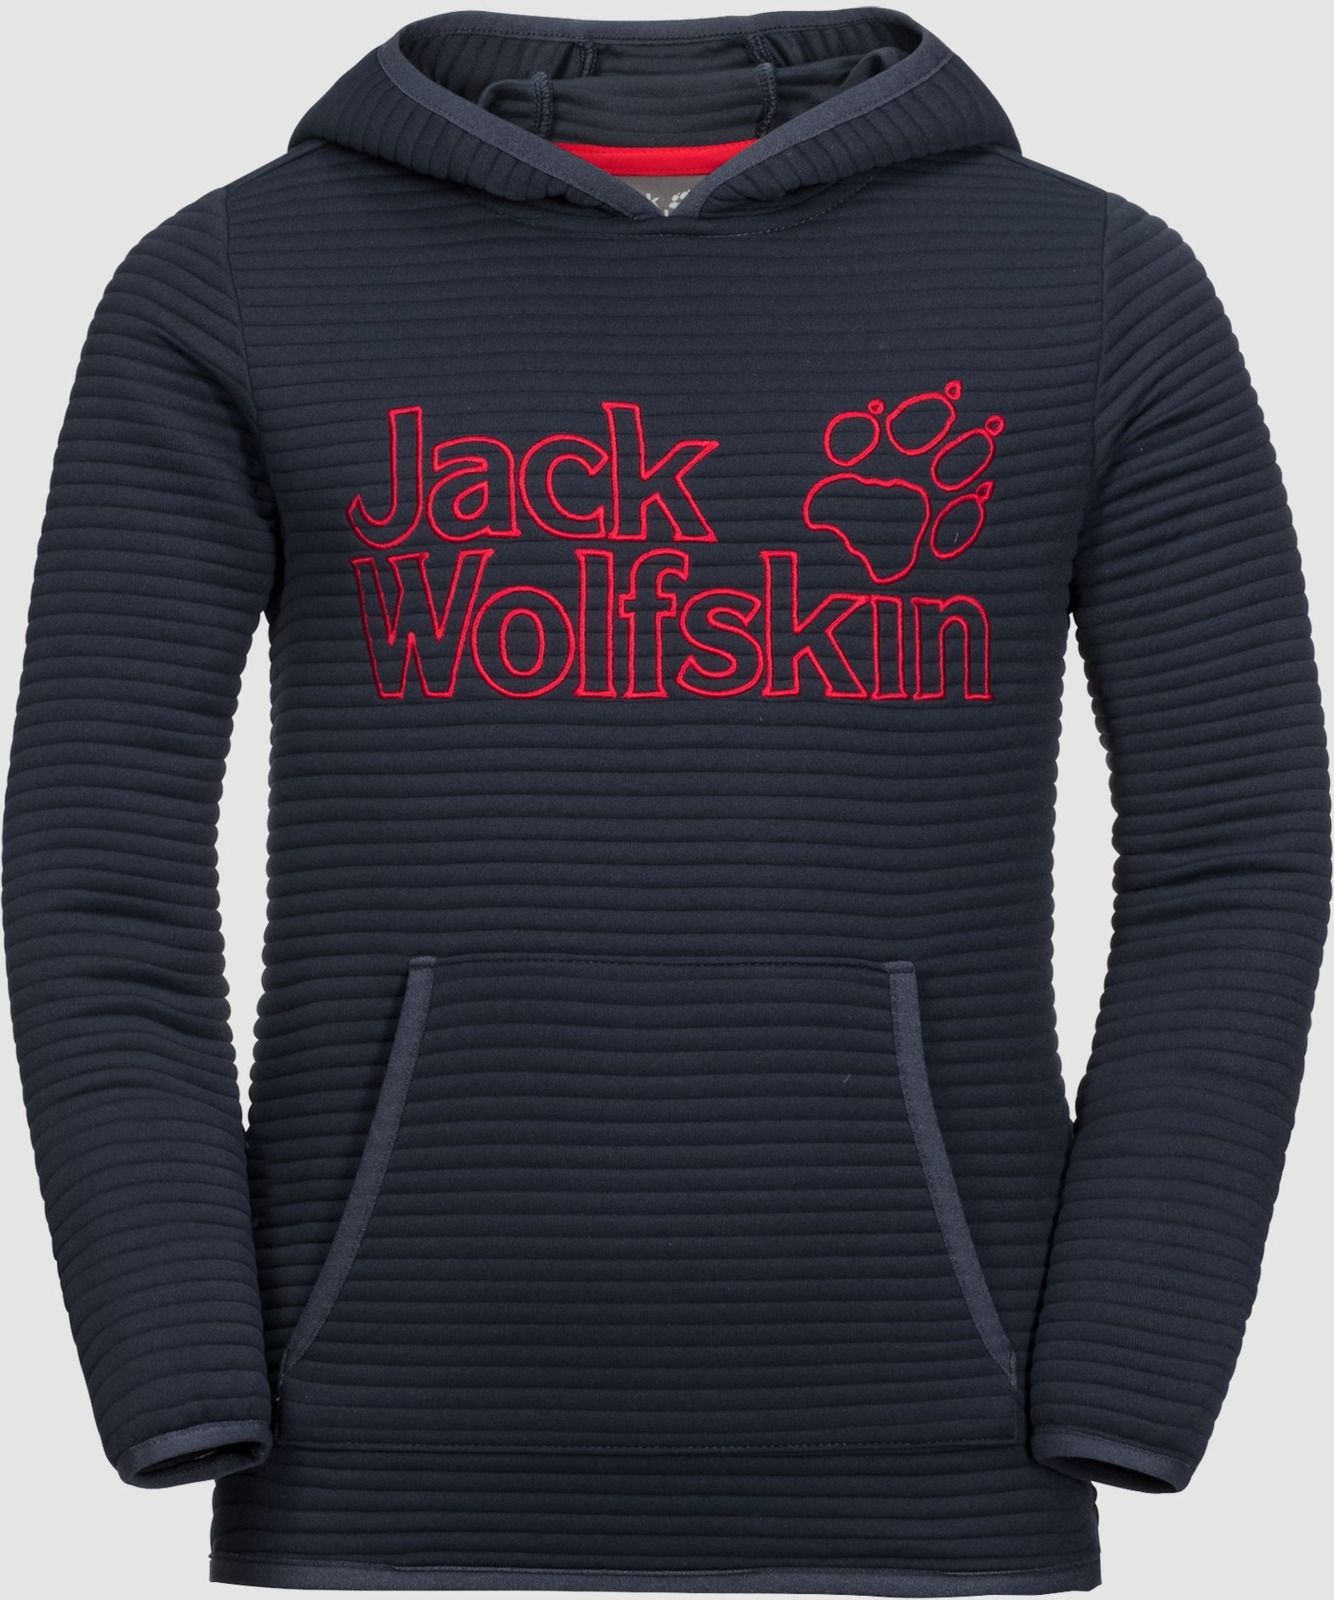   Jack Wolfskin Modesto Hoody, : -. 1607721-1010.  150/154